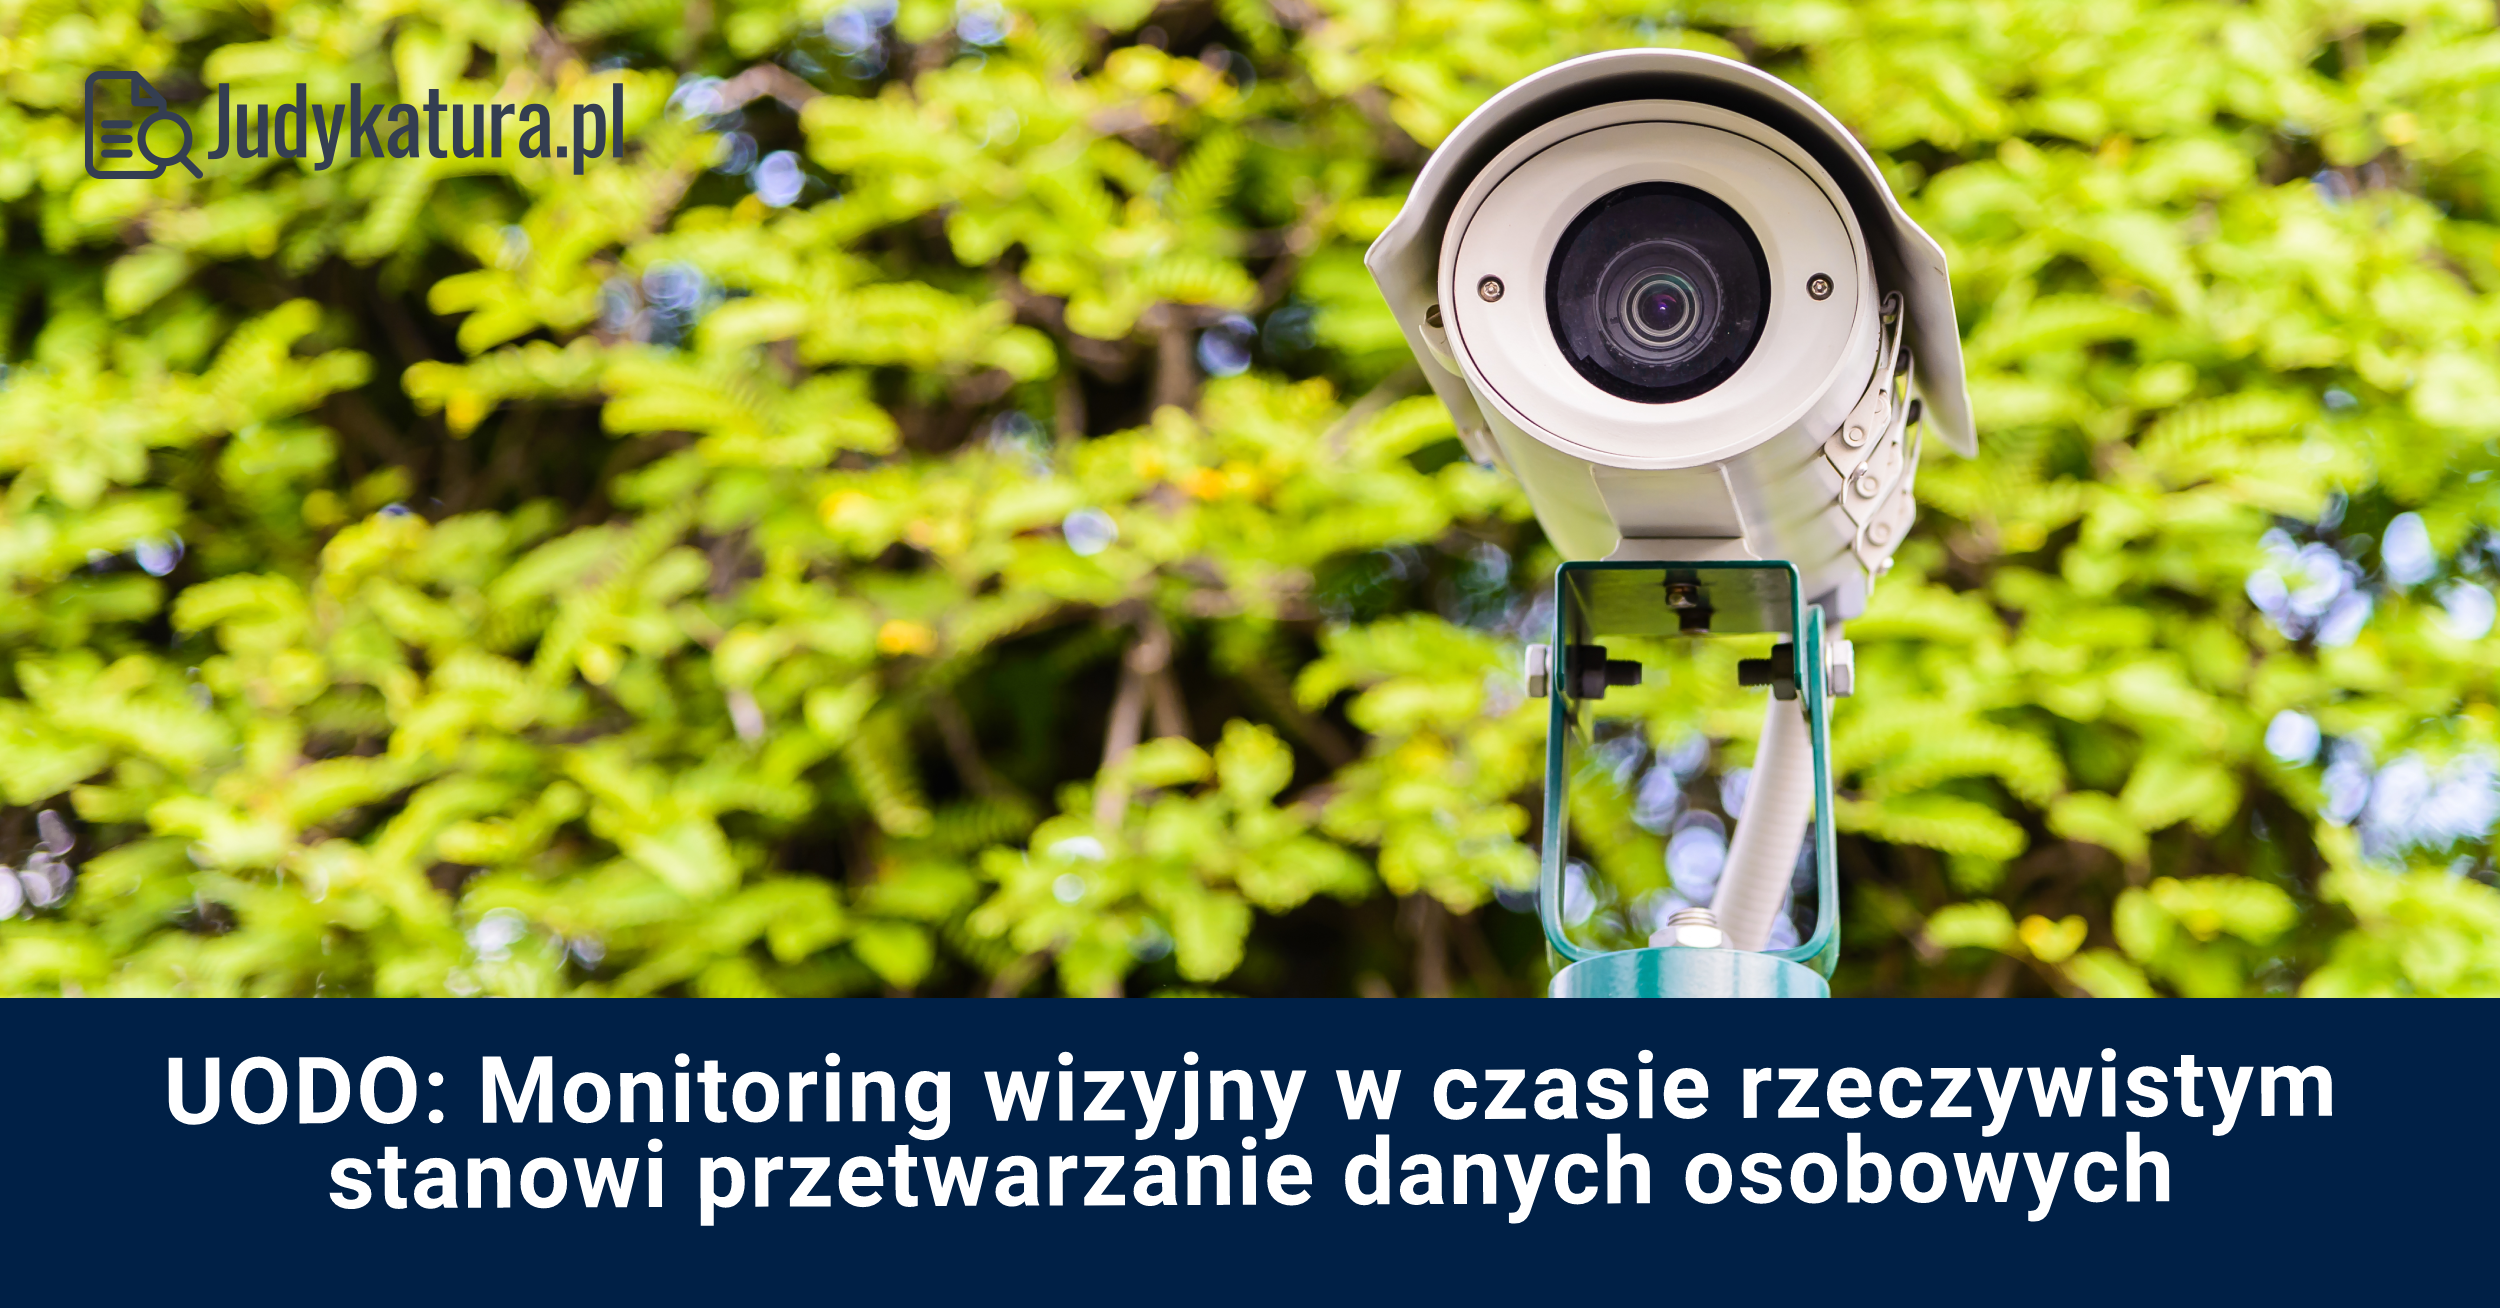 Monitoring wizyjny w czasie rzeczywistym stanowi przetwarzanie danych osobowych